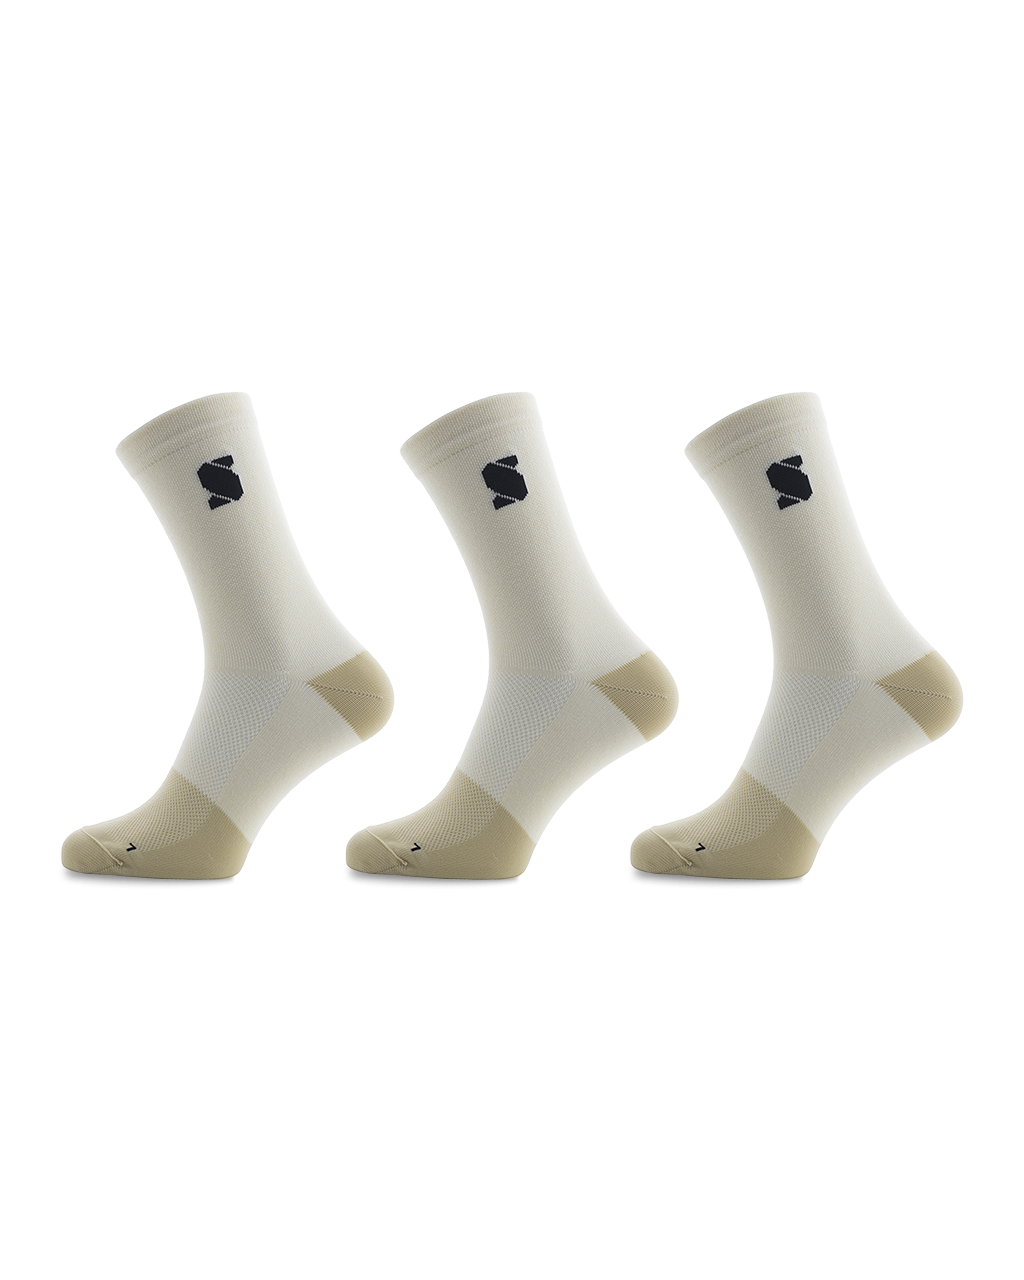 lambs-wool-essentials-cycling-socks-3-pack-sockeloen